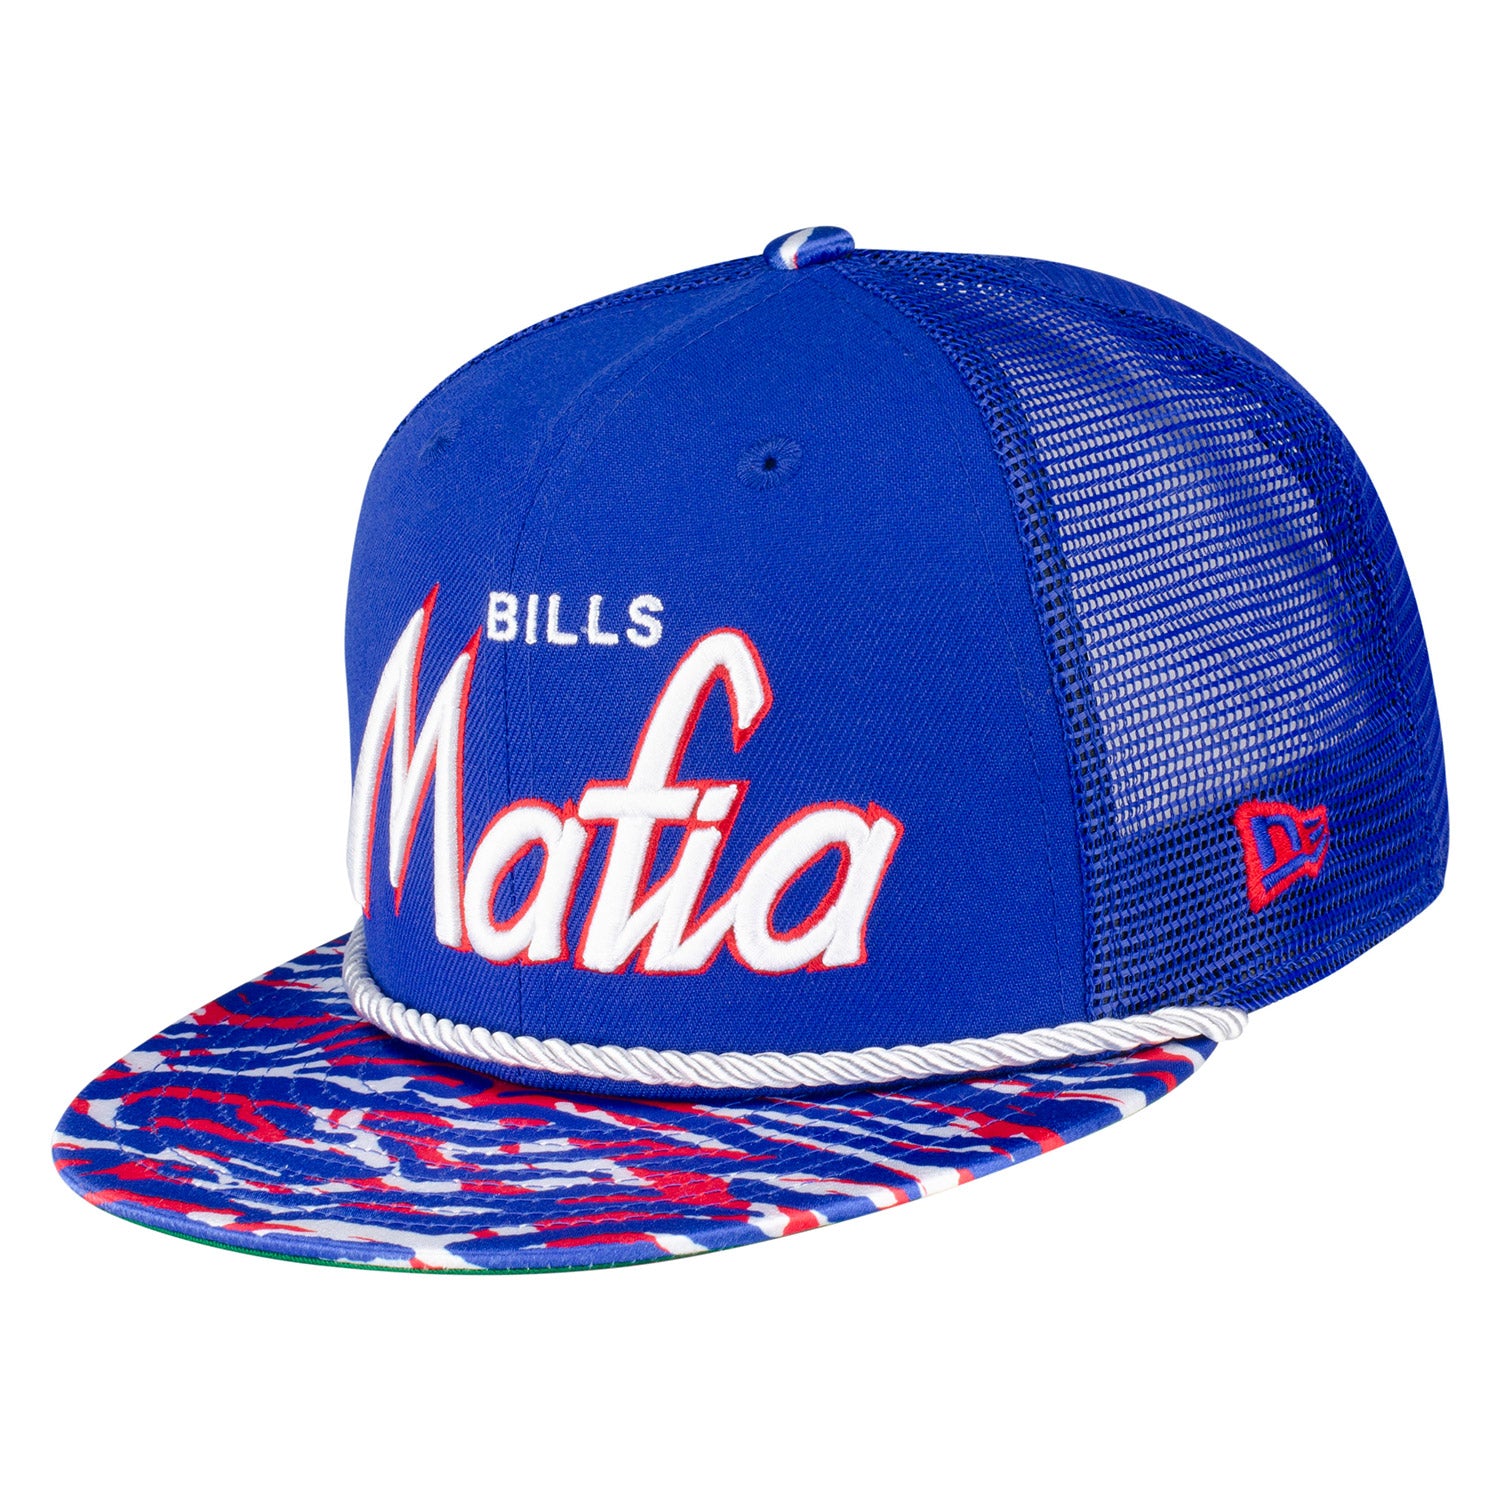 New Era Bills Mafia Store | Snapback Hat Trucker Bills 9FIFTY The